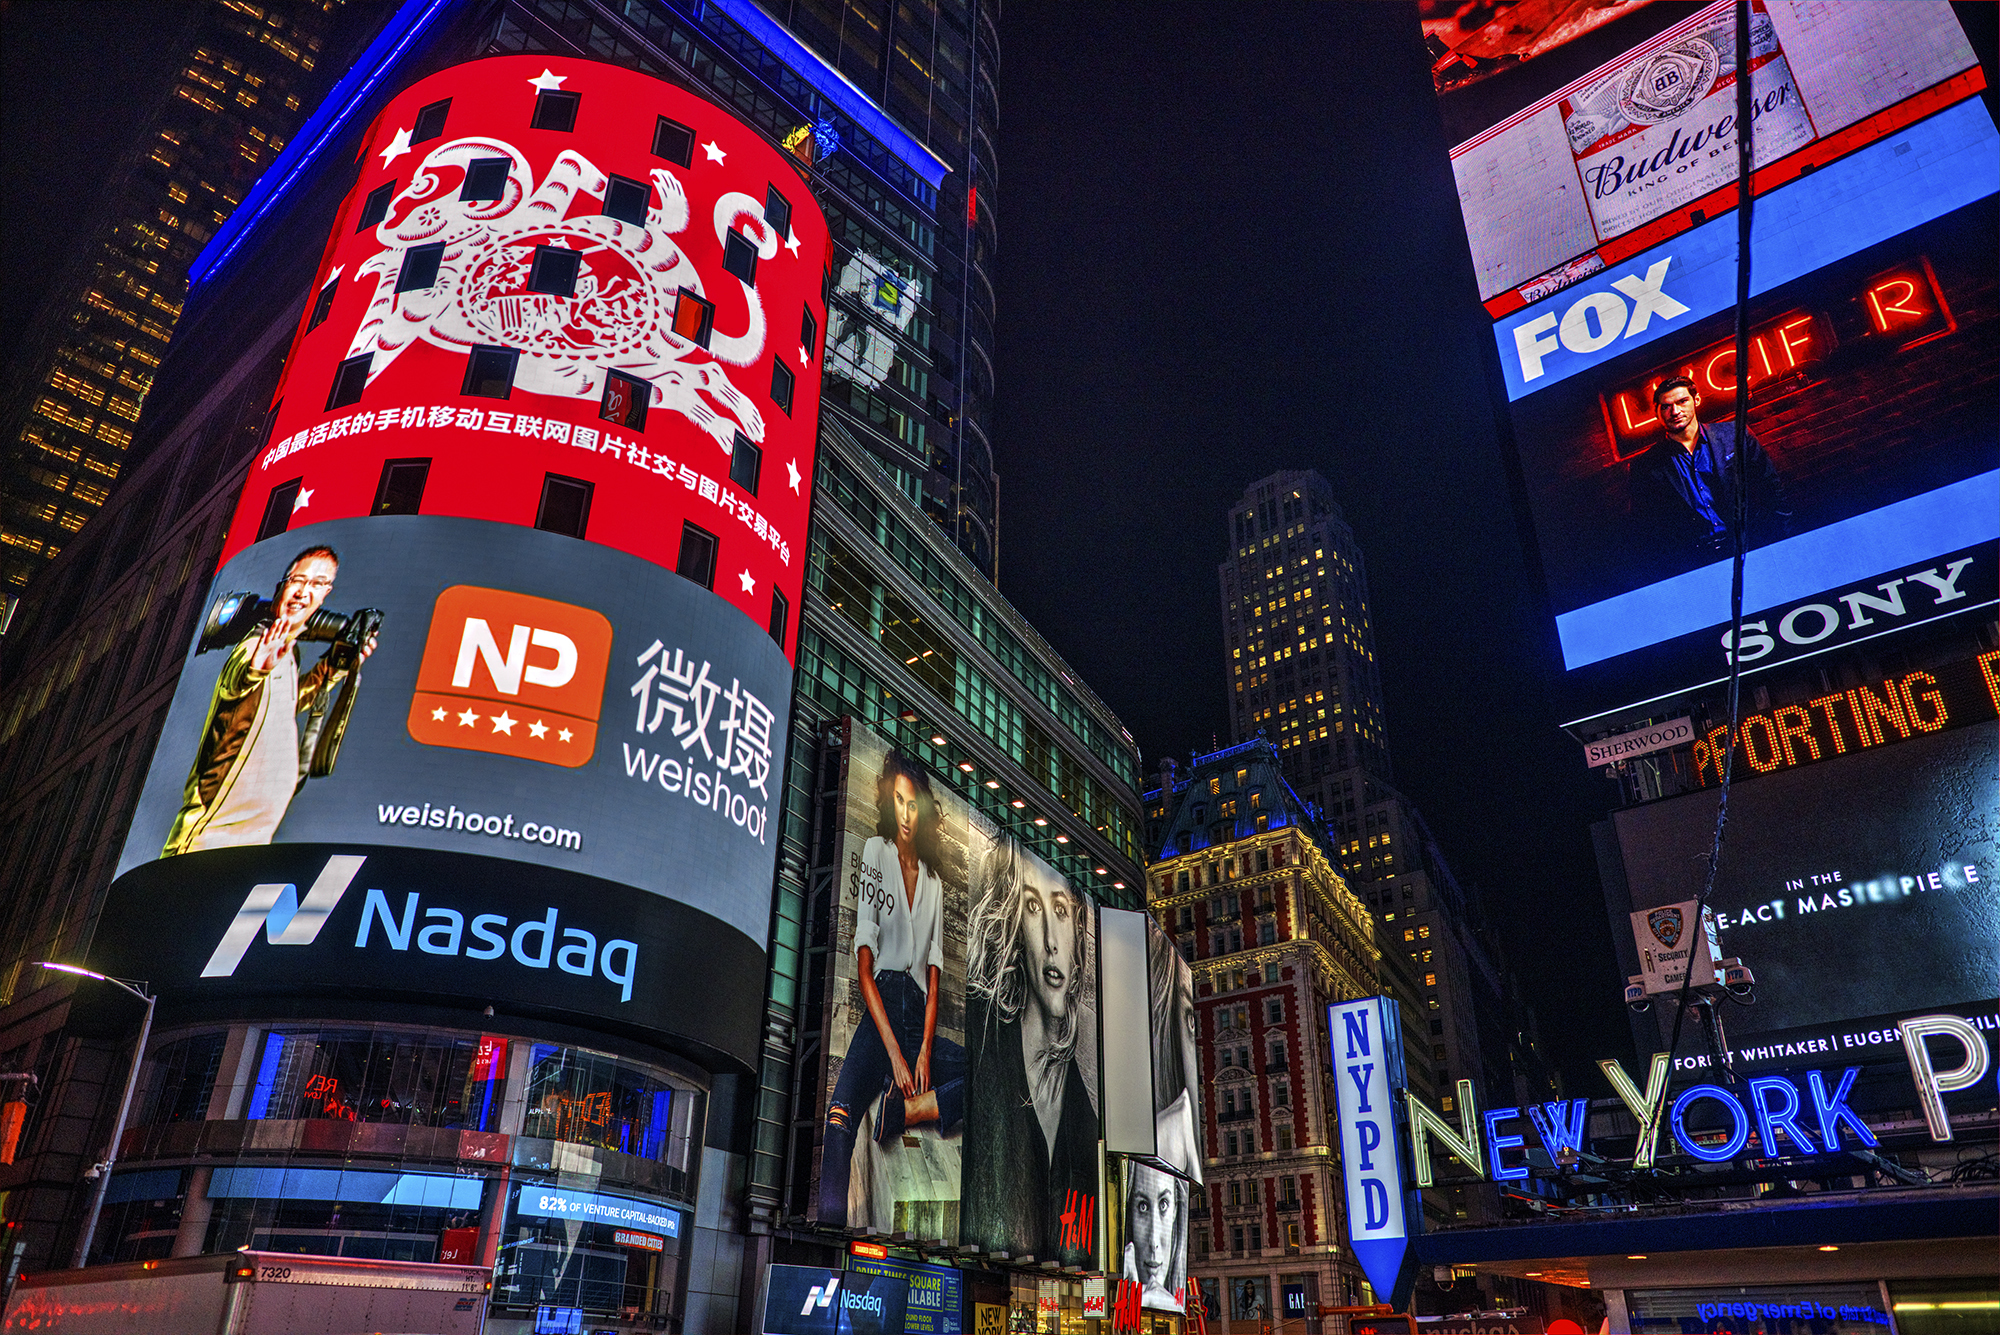 2000,2015年2月，何世红先生投资的图片社交平台——微摄登陆纽约时代广场纳斯达克证券交易所显示屏.jpg